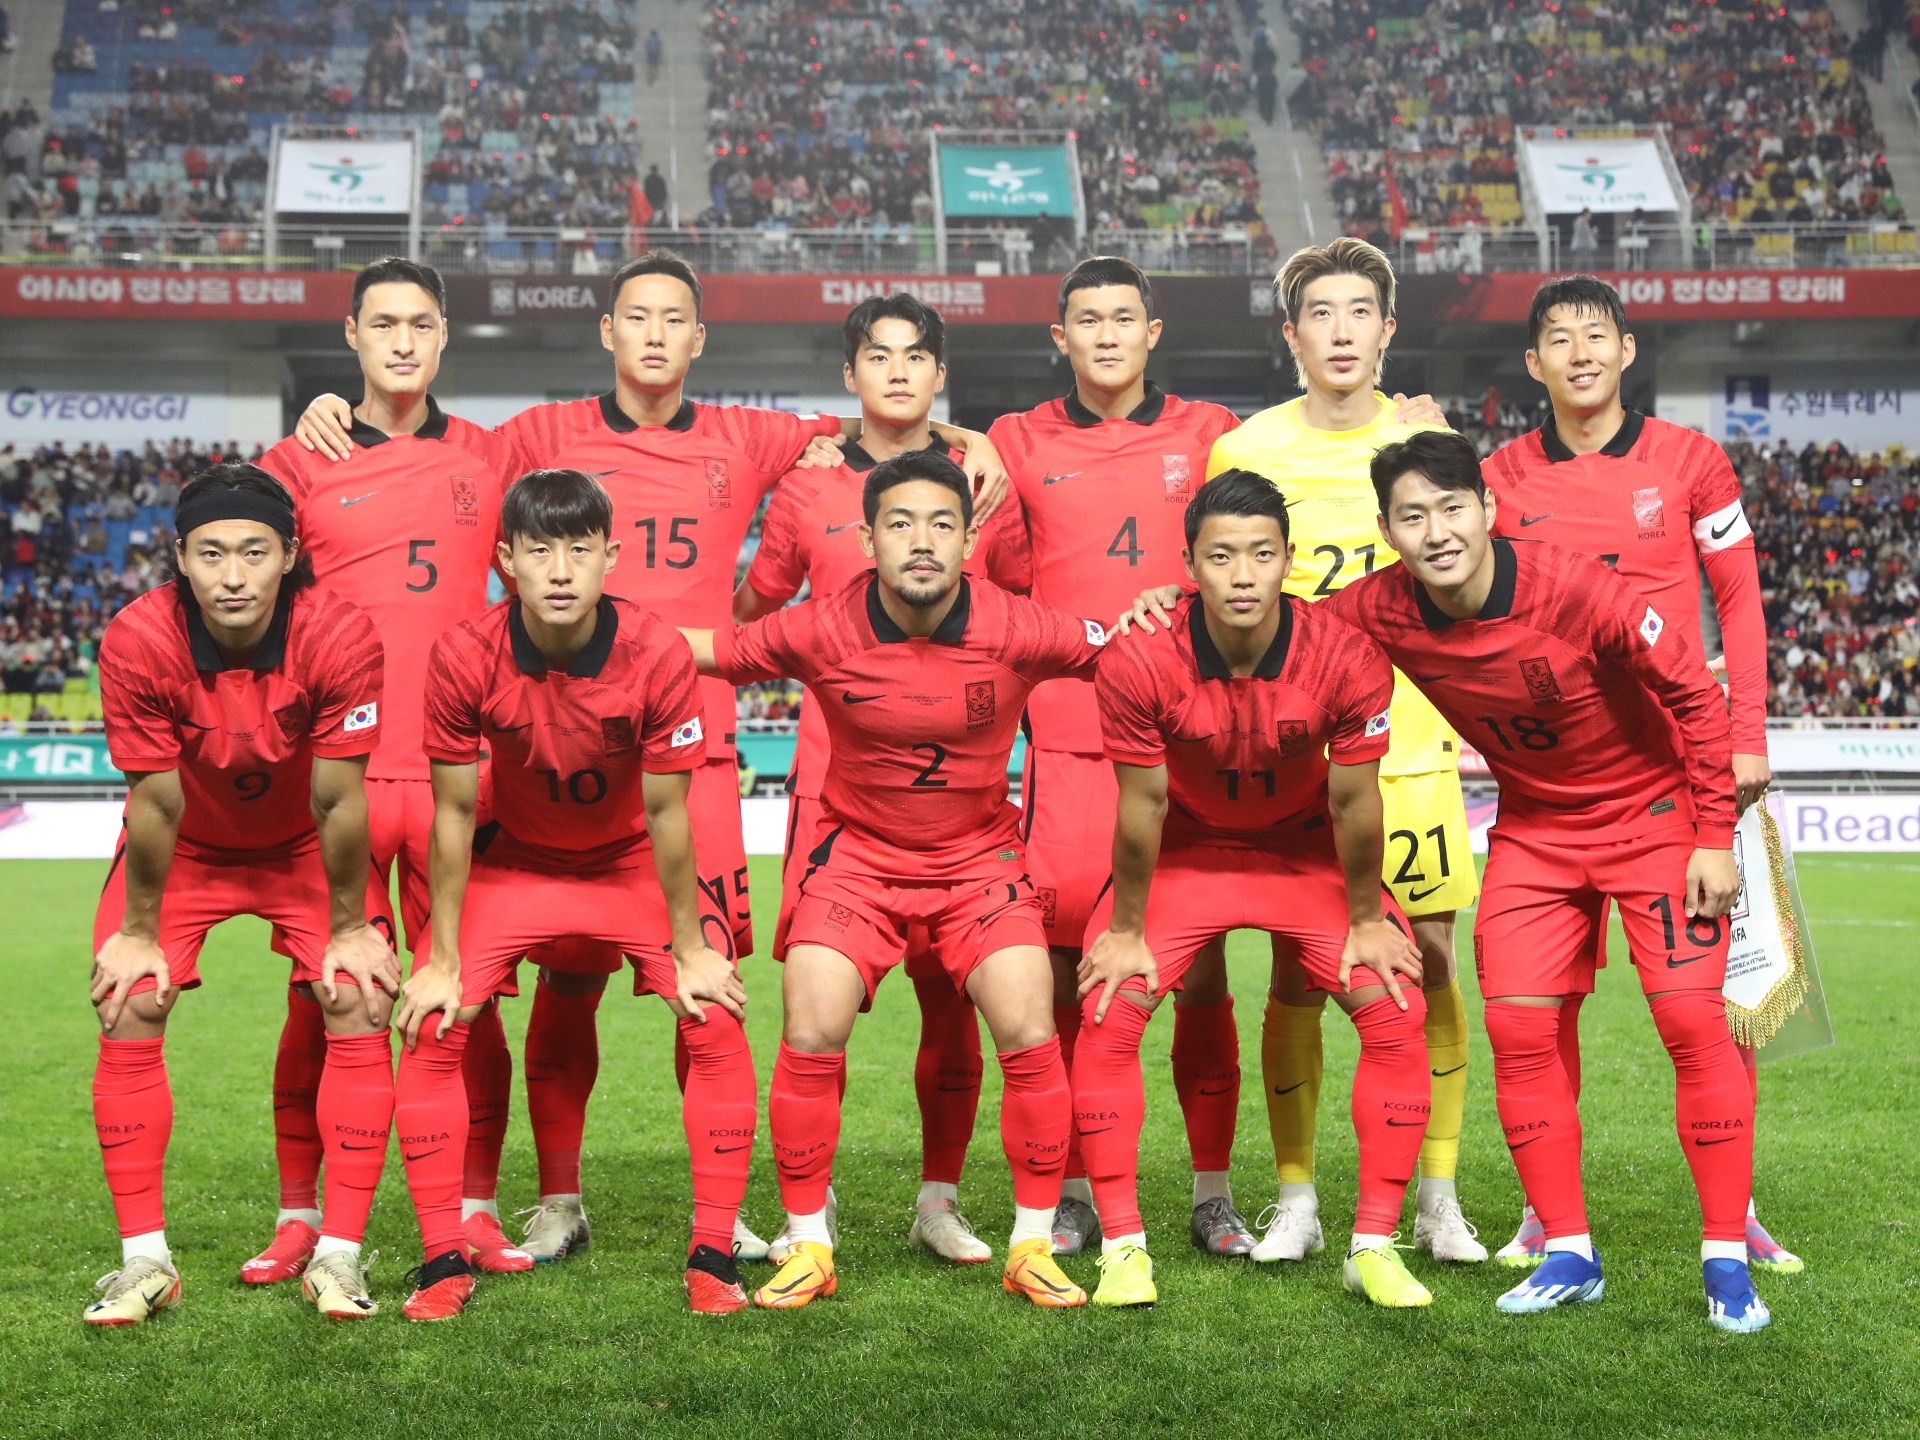 كلينسمان يعلن قائمة كوريا الجنوبية النهائية لكأس آسيا 2023 | رياضة – البوكس نيوز